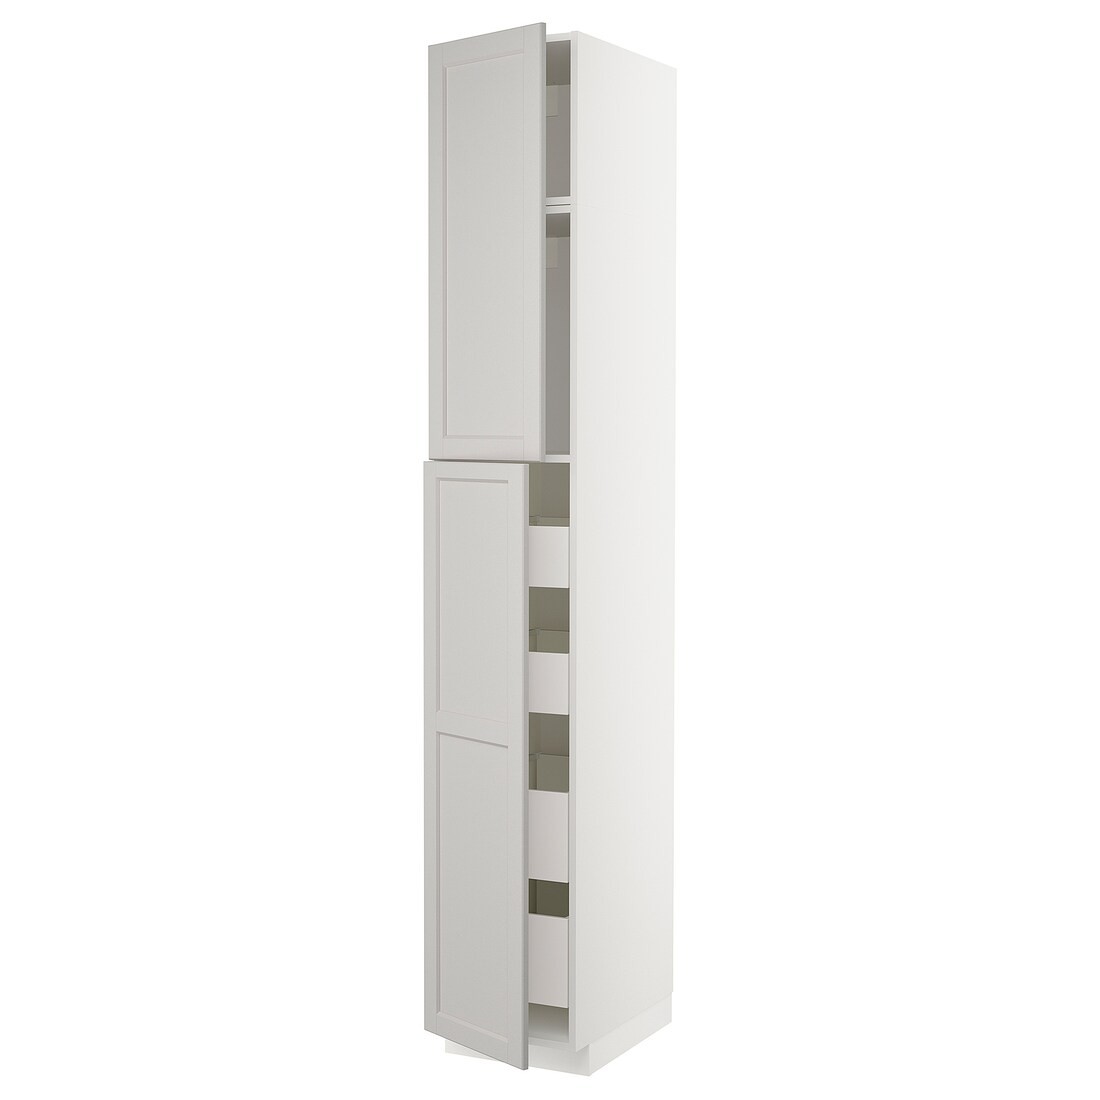 METOD МЕТОД / MAXIMERA МАКСИМЕРА Шкаф высокий 2 двери / 4 ящика, белый / Lerhyttan светло-серый, 40x60x240 см